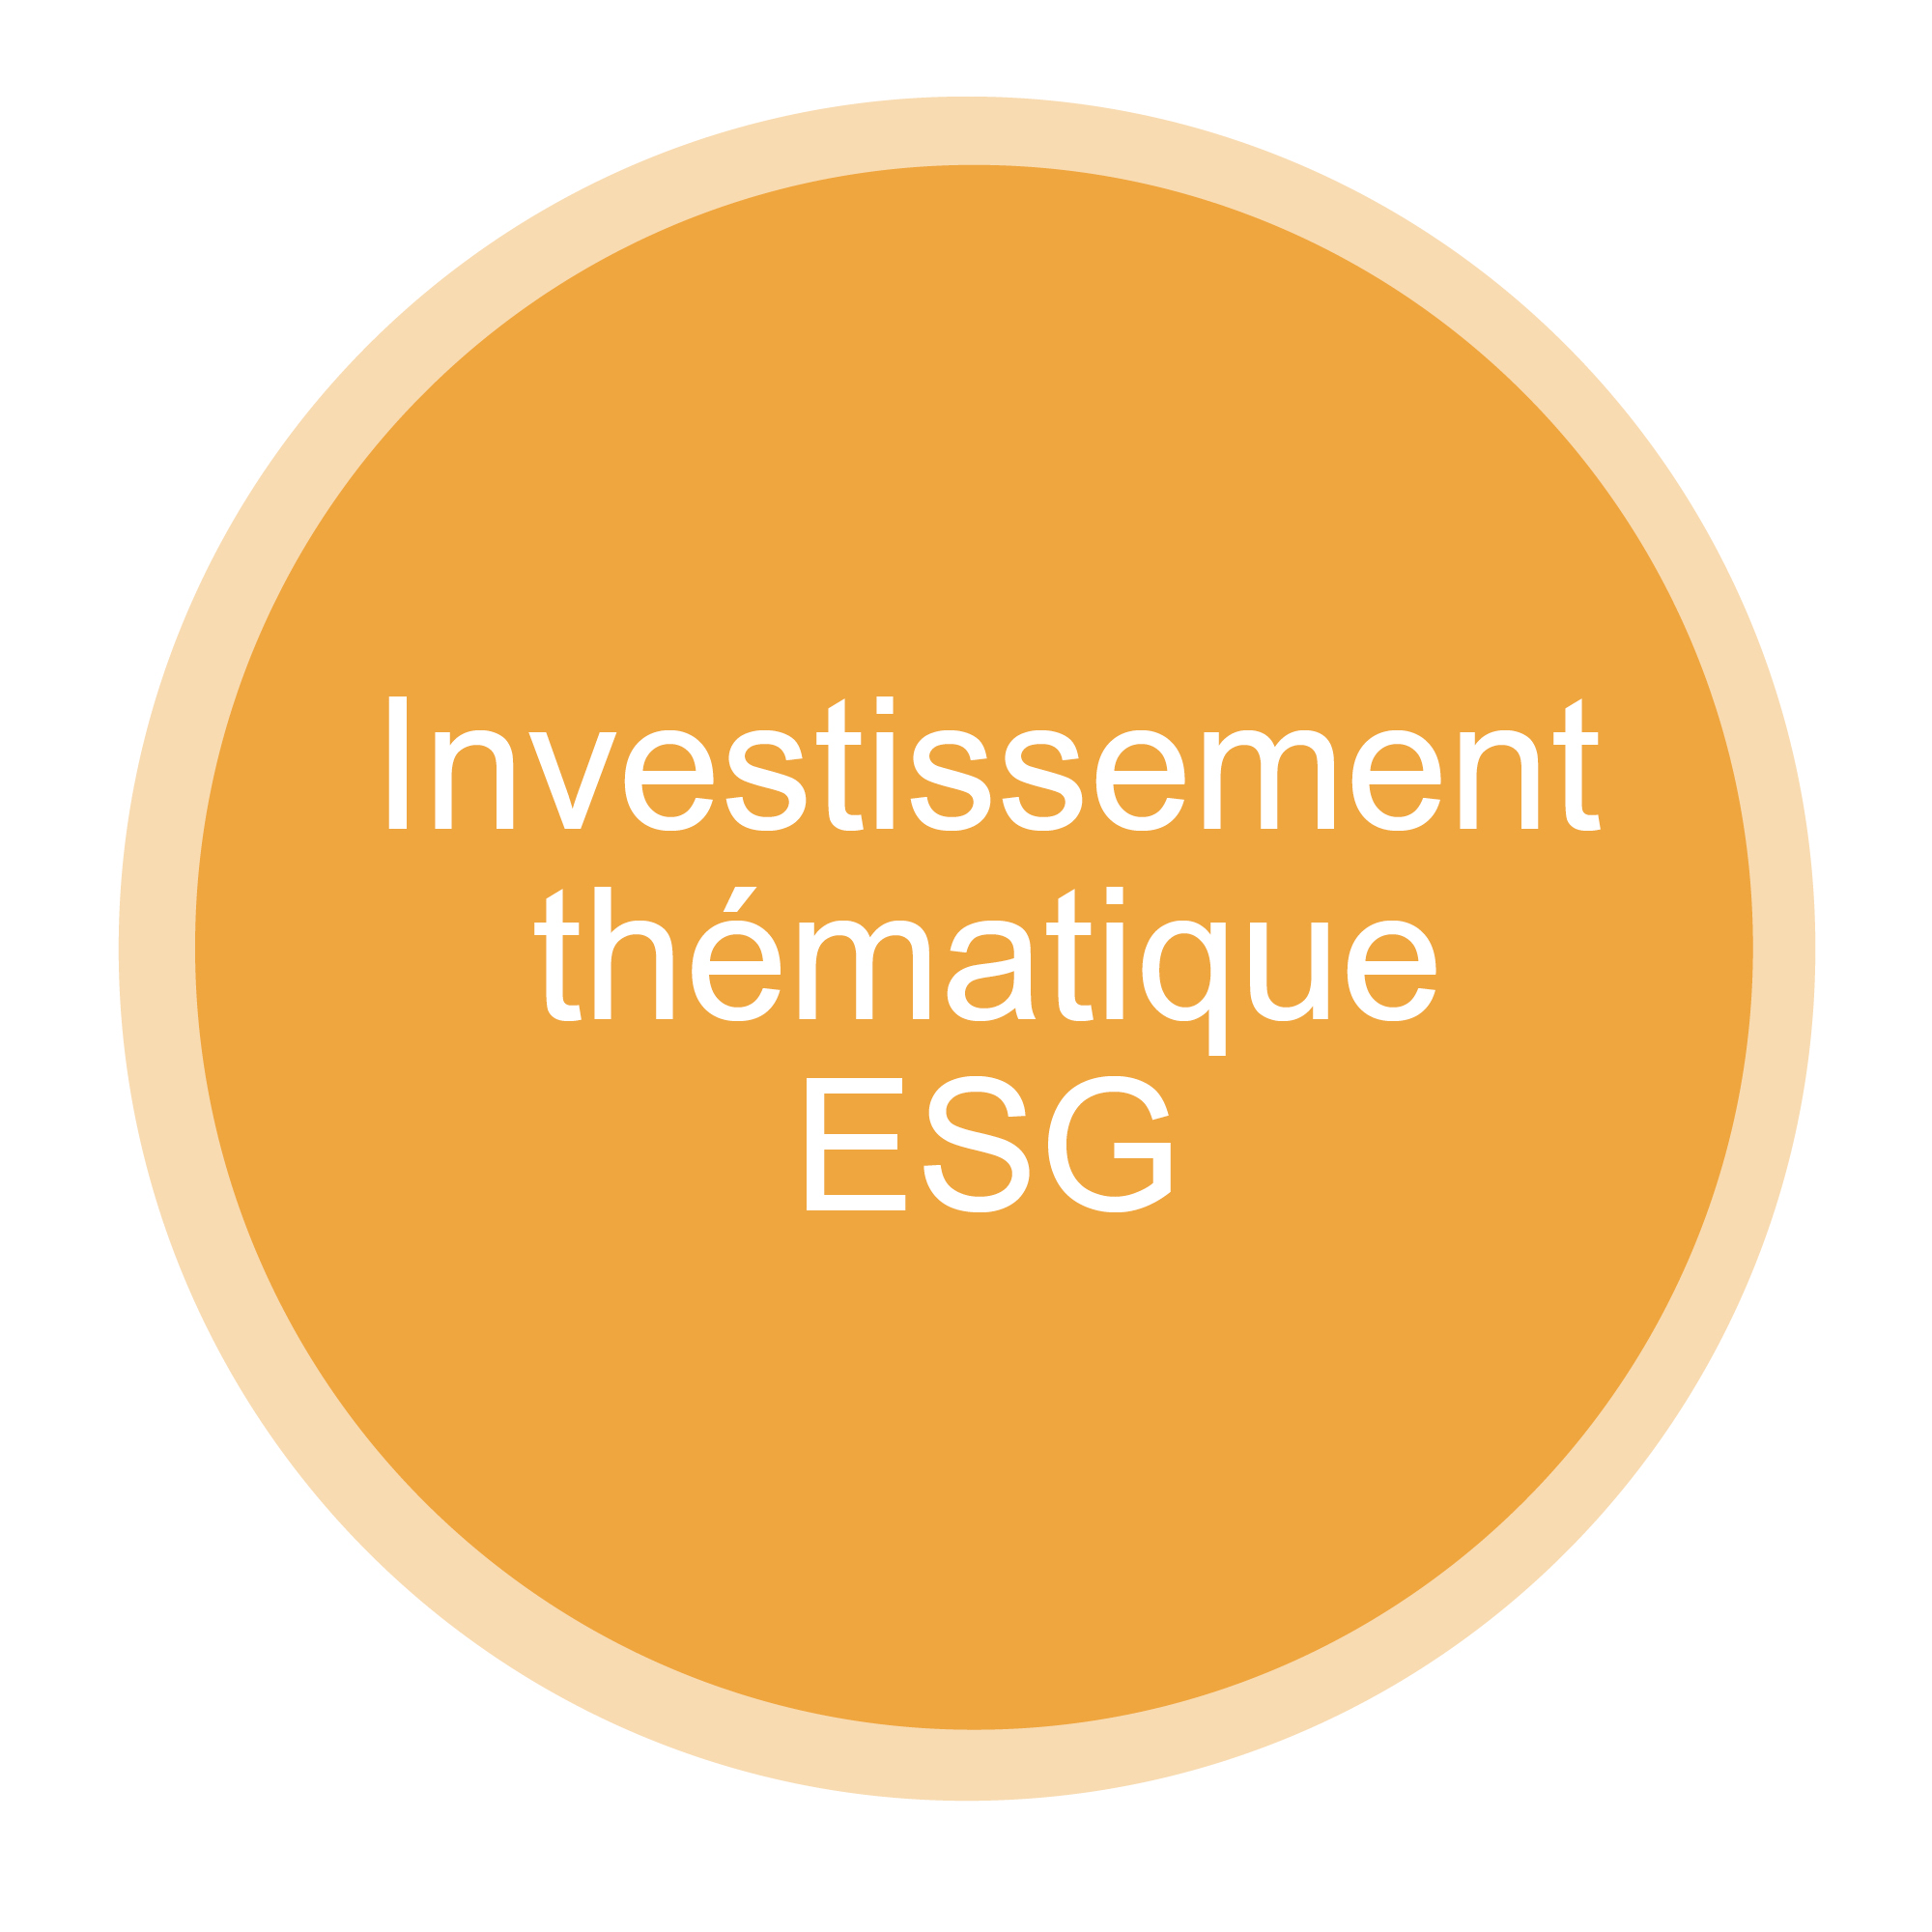 Thematic ESG investing